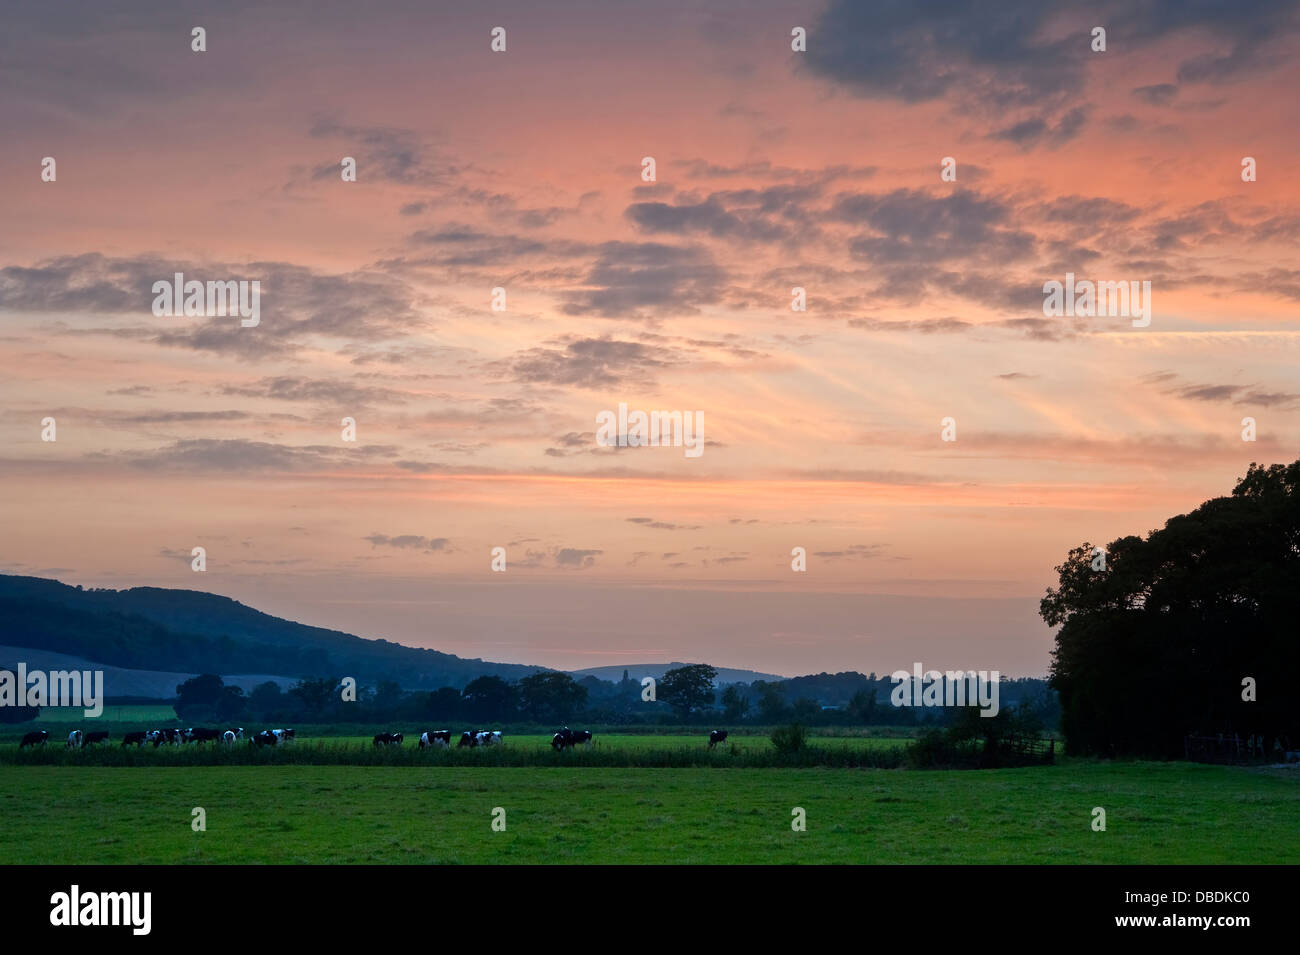 Adorabile immagine attraverso il campo di vacca in vibrante sunset inglese paesaggio di campagna Foto Stock